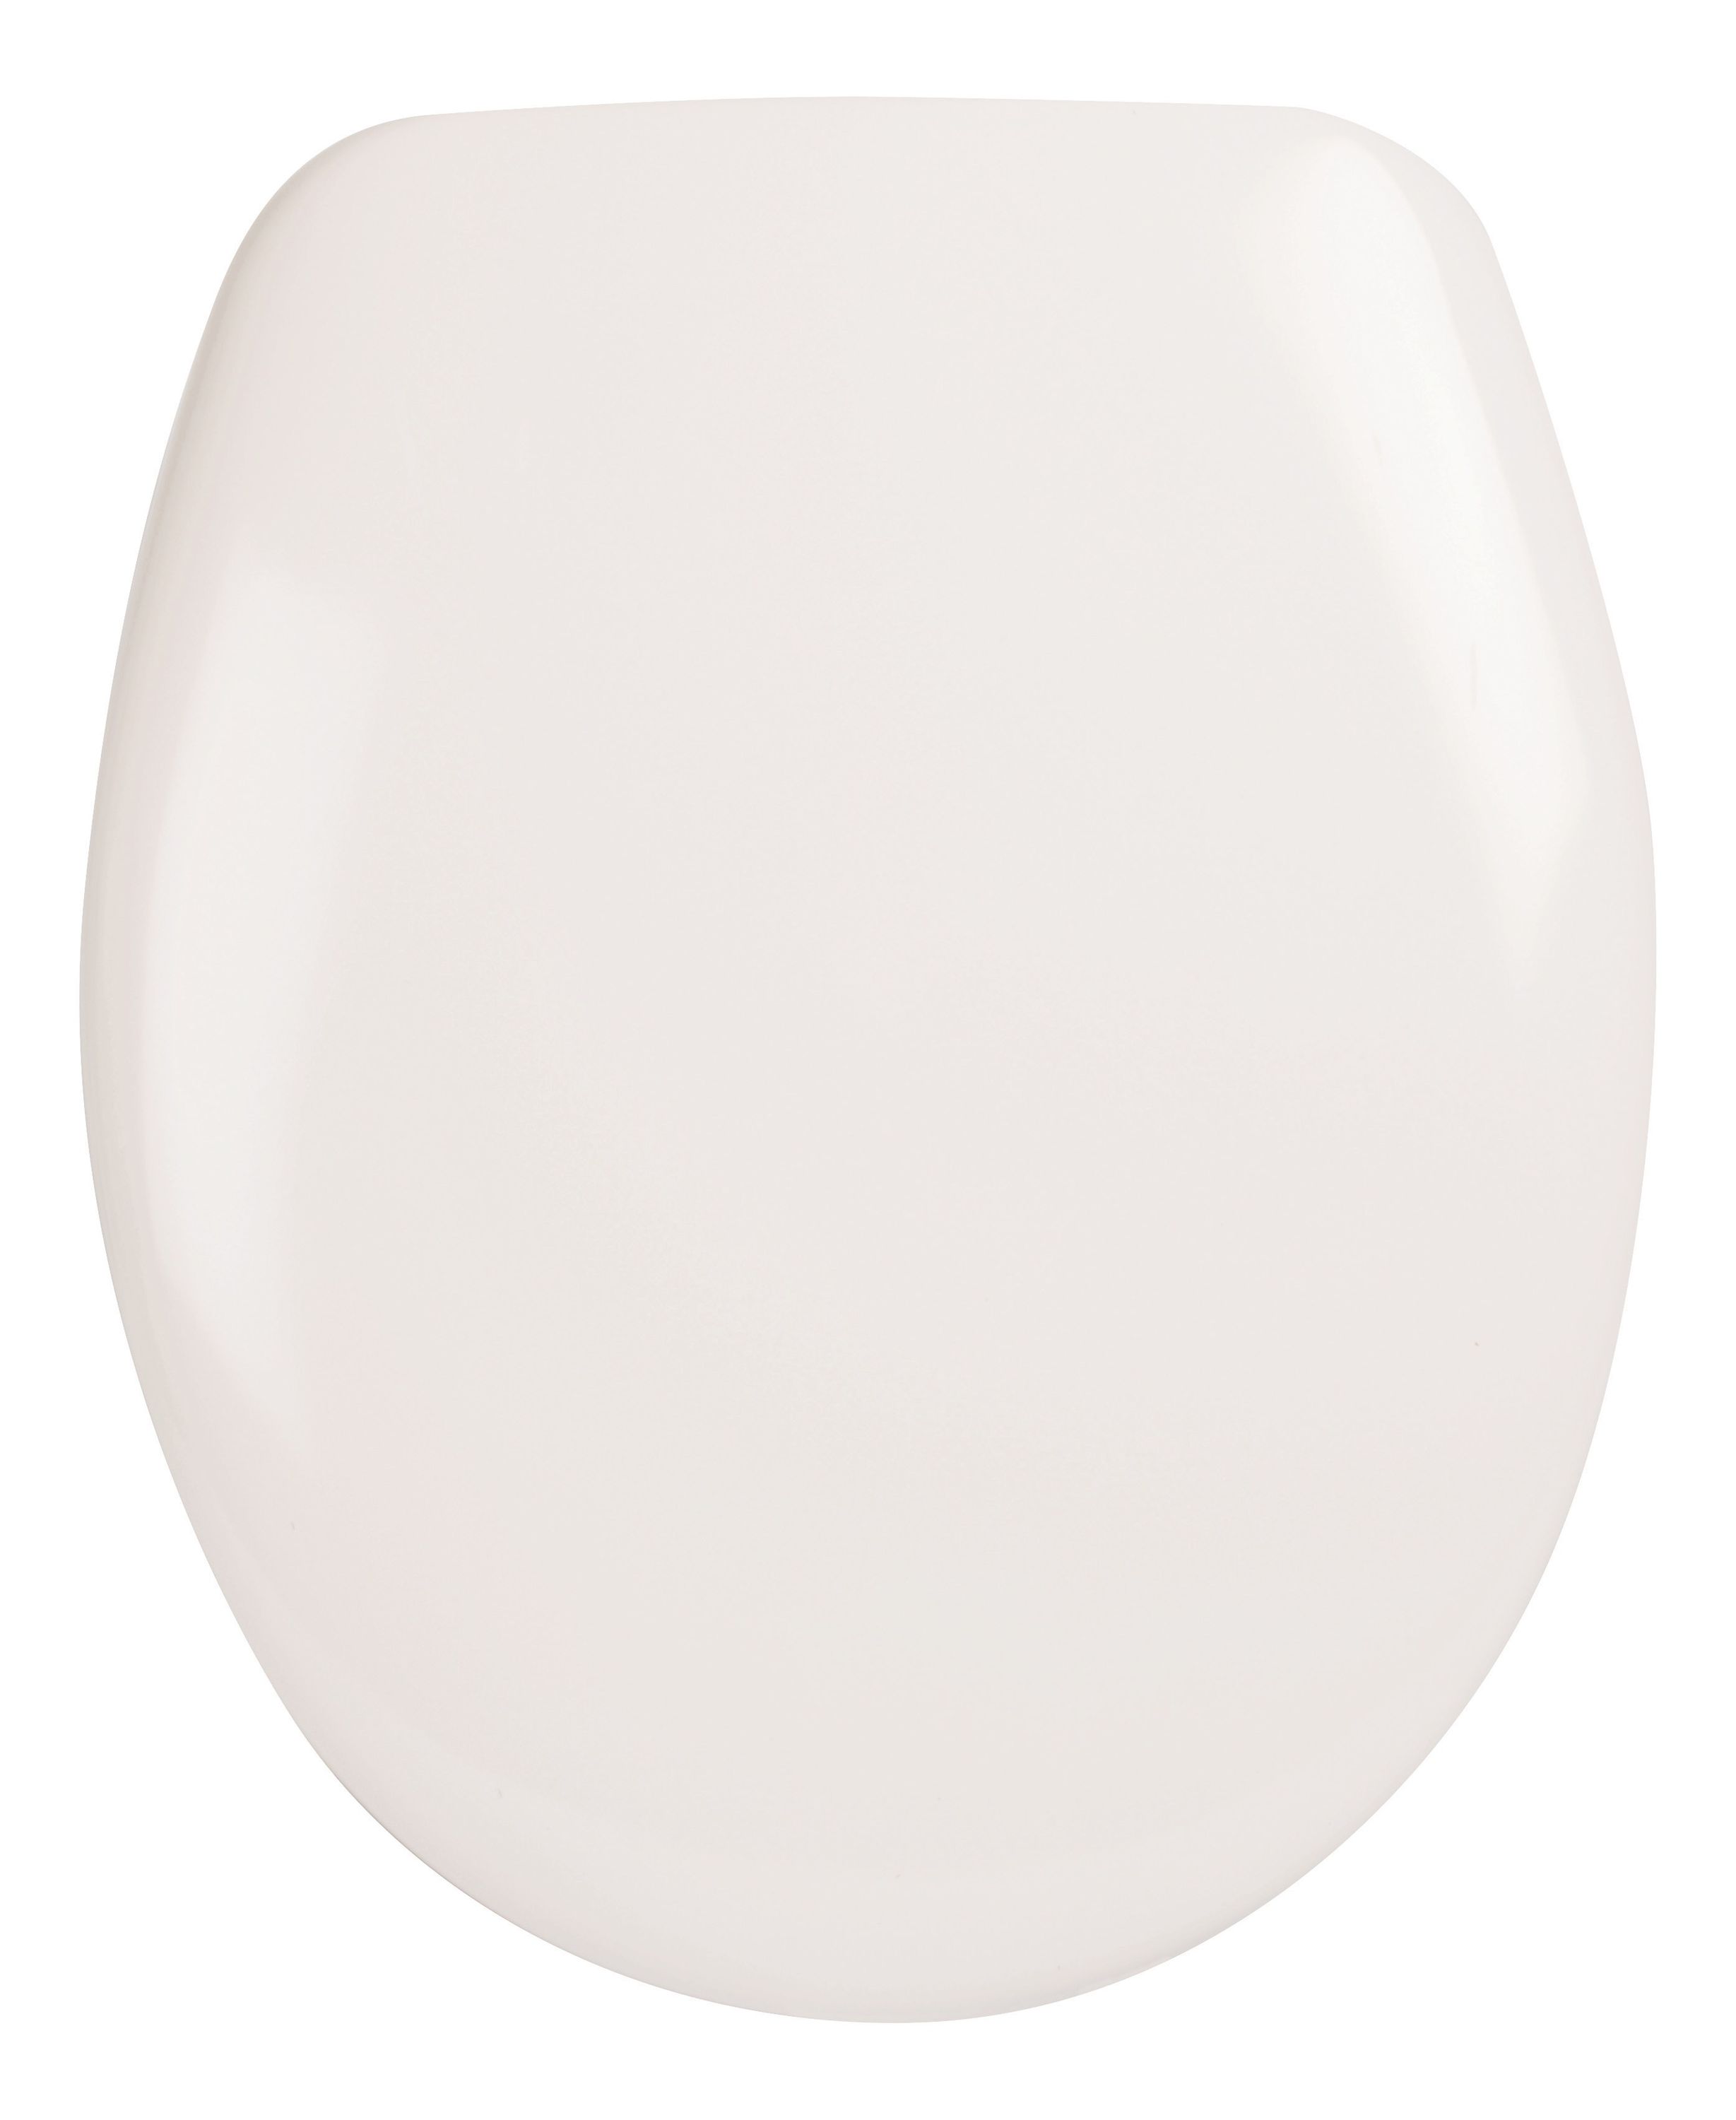 WC-Sitz 26LP2760 in Weiß aus antibakteriellem Duroplast mit Fast-Fix und Edelstahlscharnier